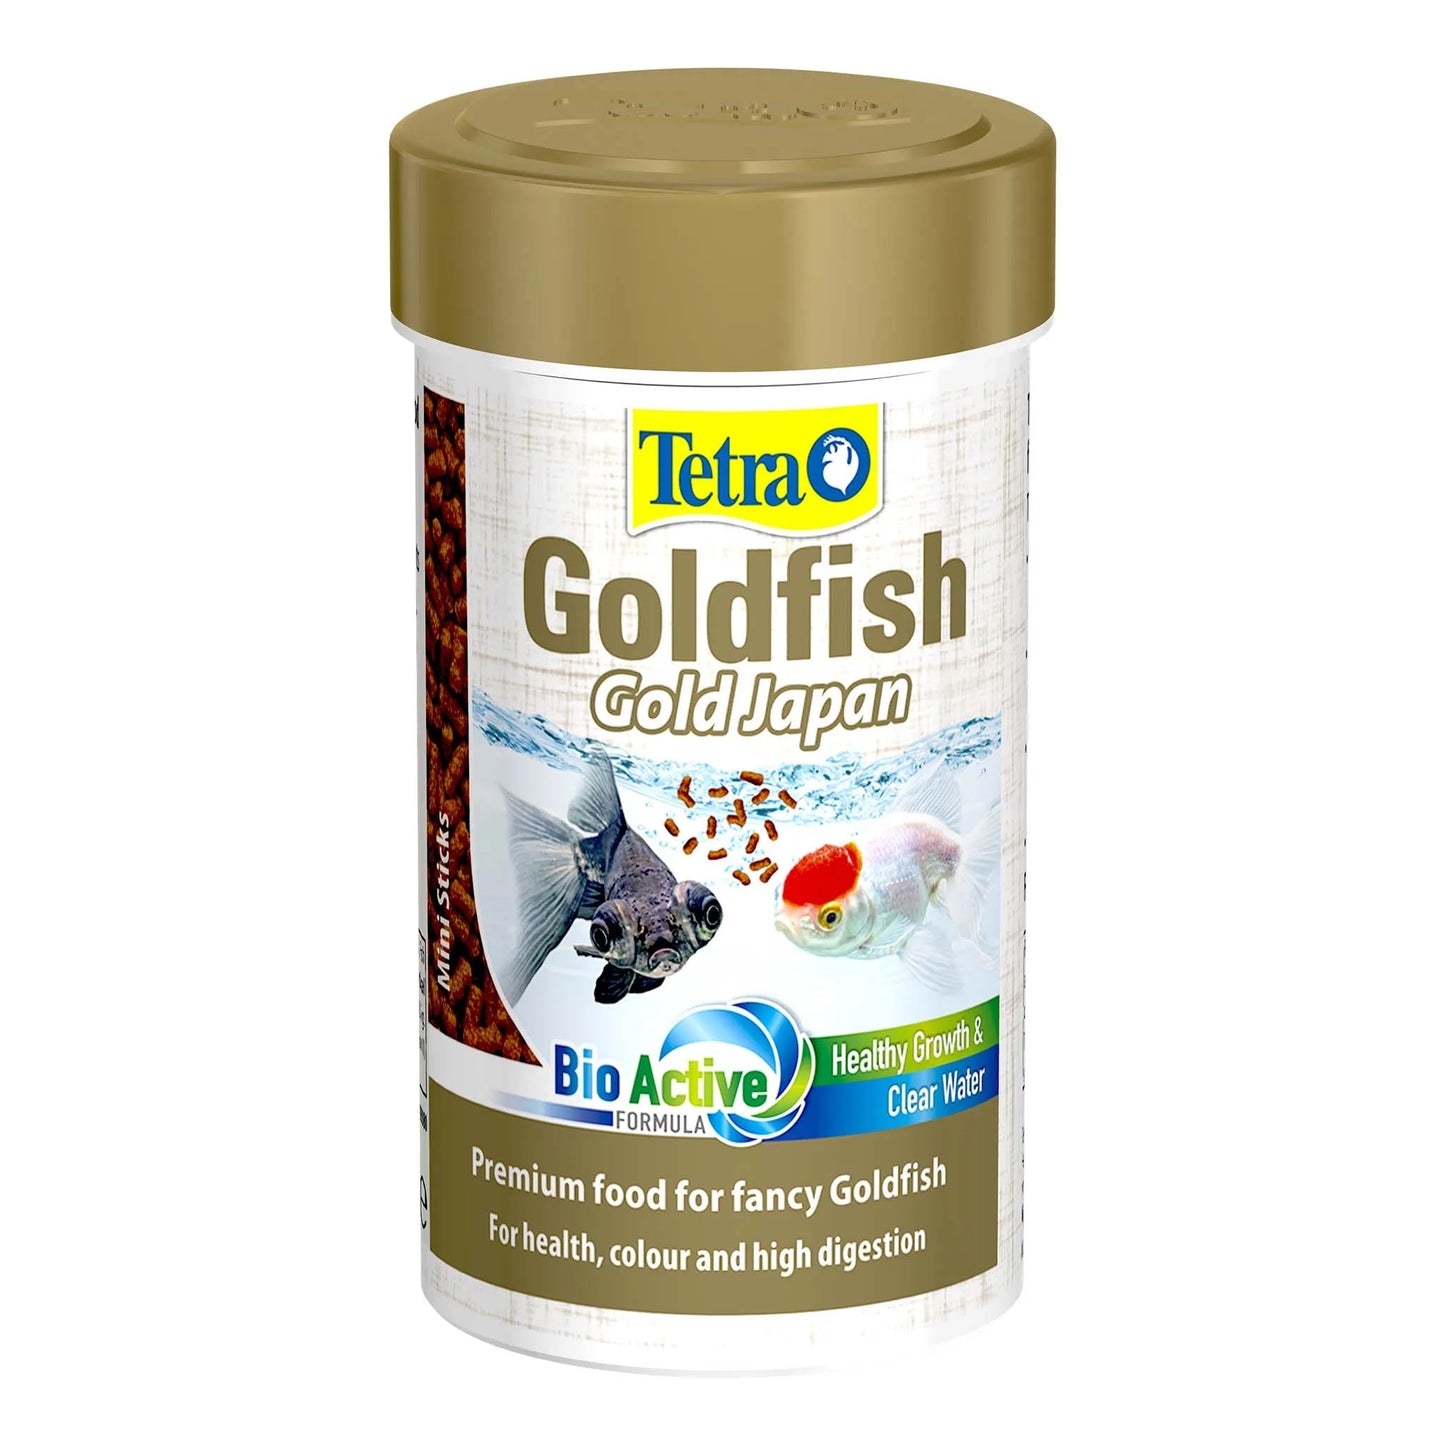 Tetra Goldfish Gold